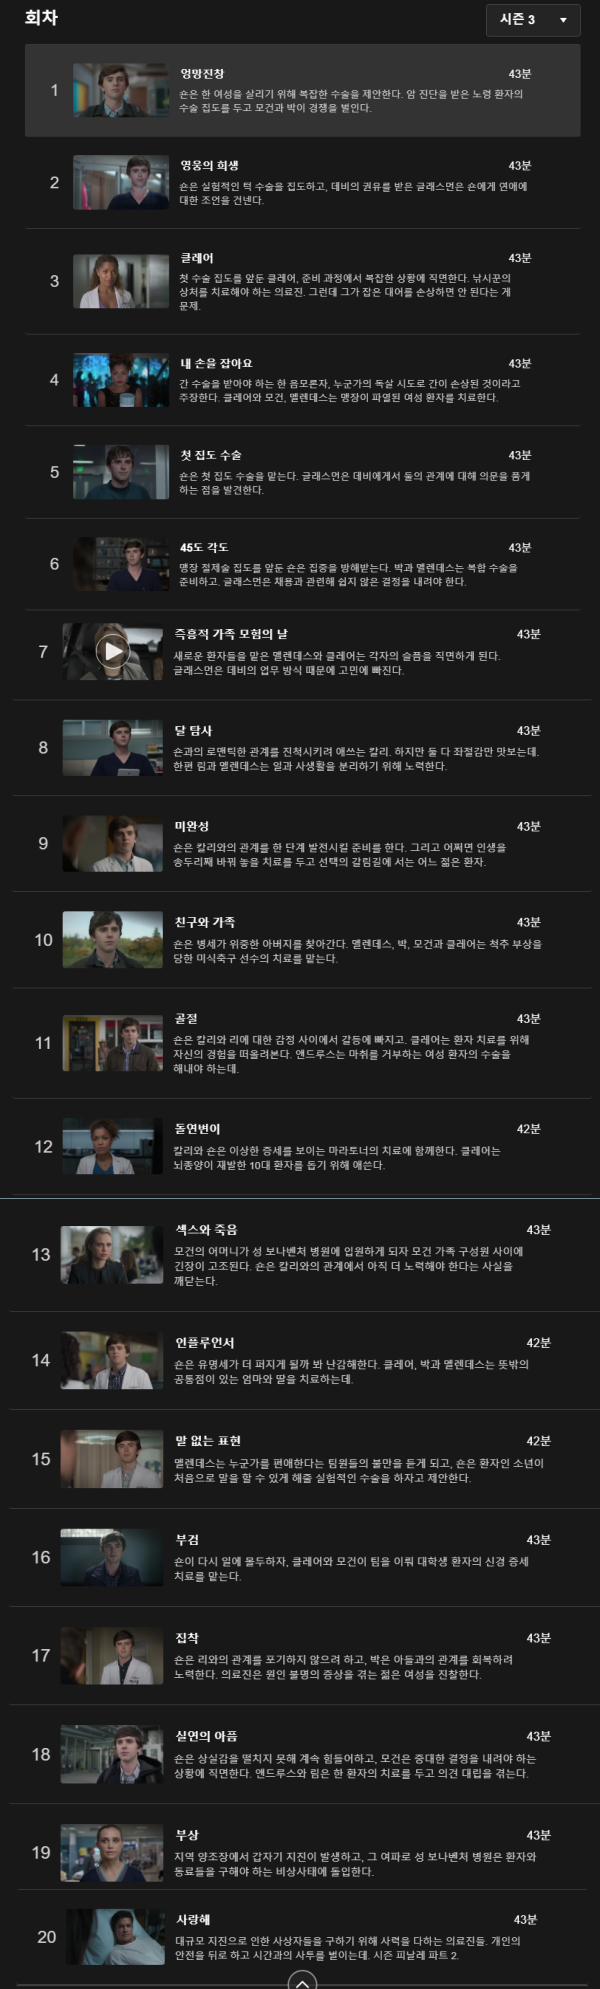 굿닥터-시즌3-회차정보-화면